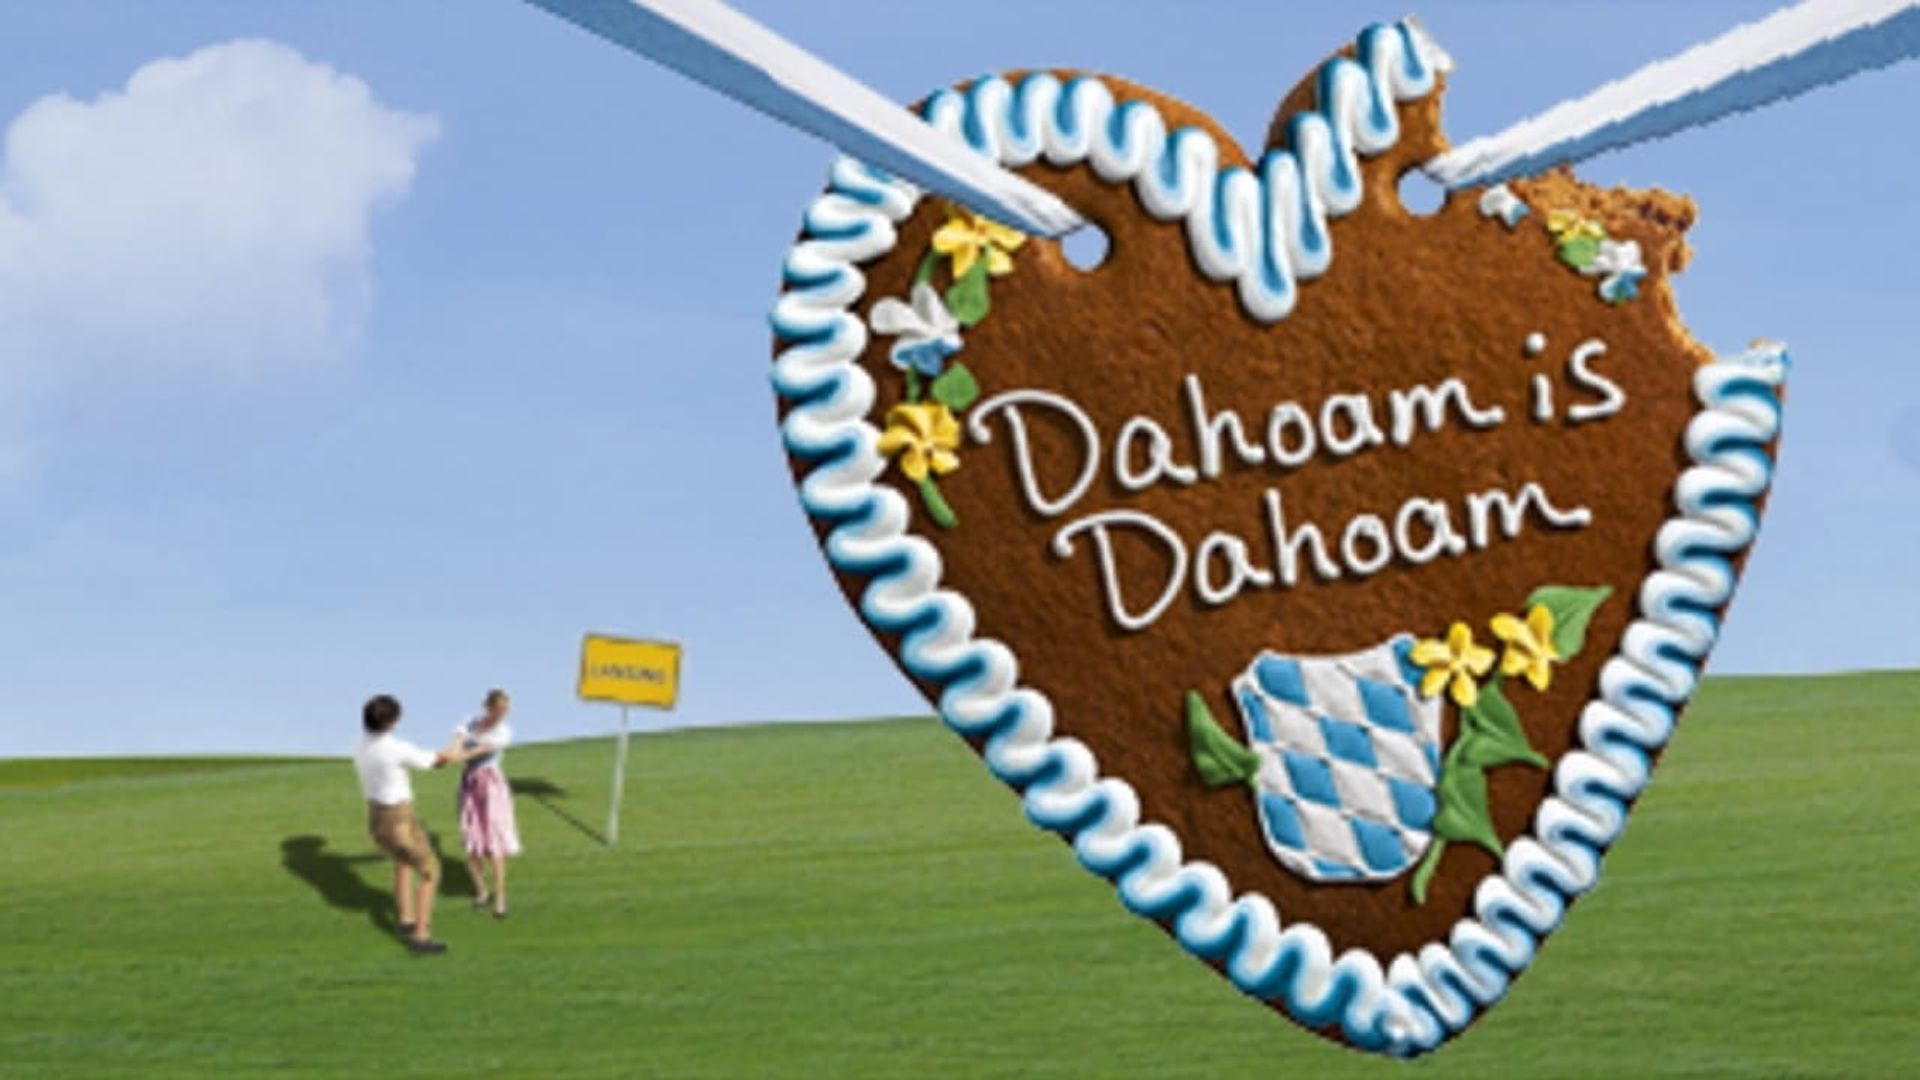 Dahoam is Dahoam background